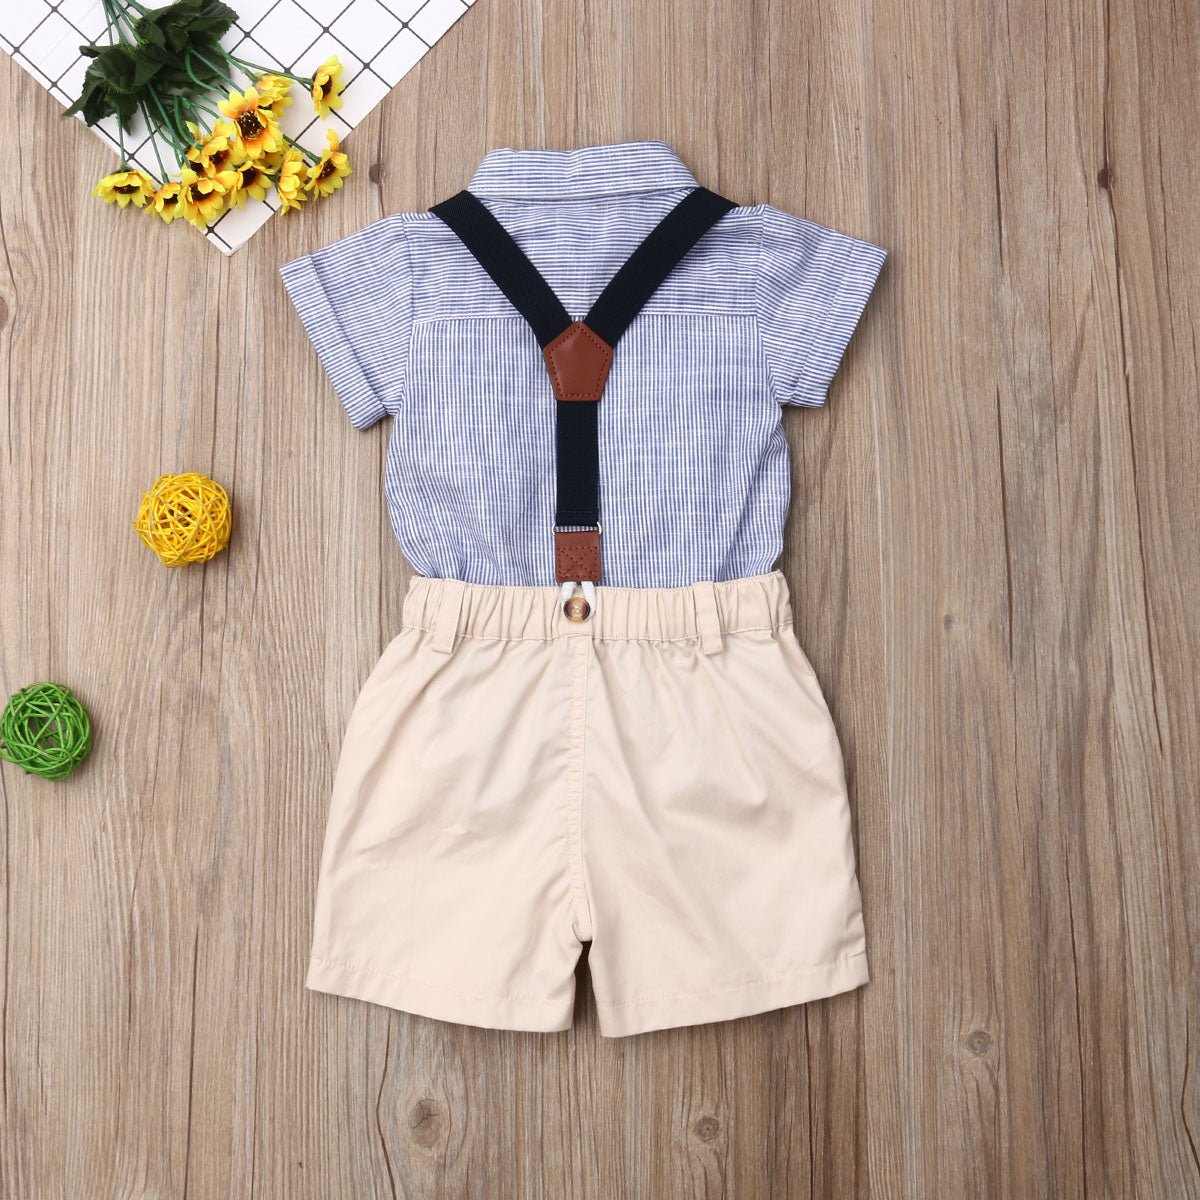 Baby Boy Summer 2PCS  Gentleman Shirt + Shorts